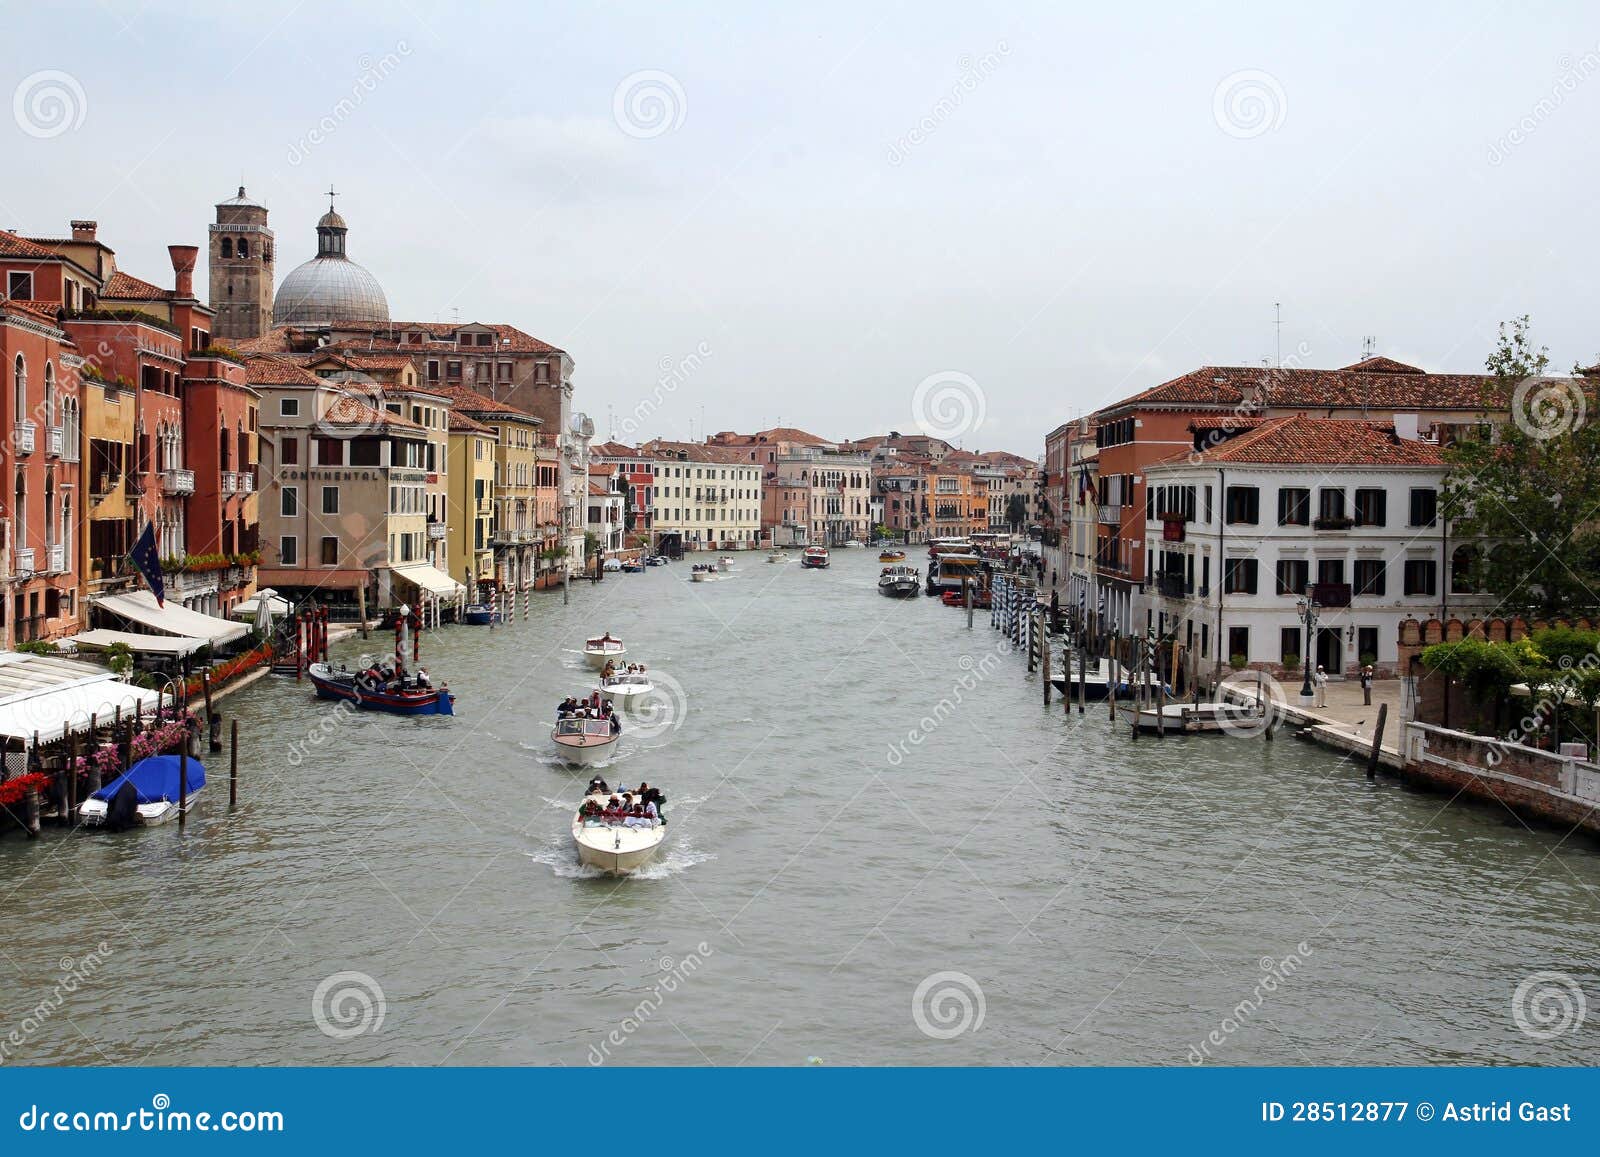 Venedig - die berühmte Stadt in Italien